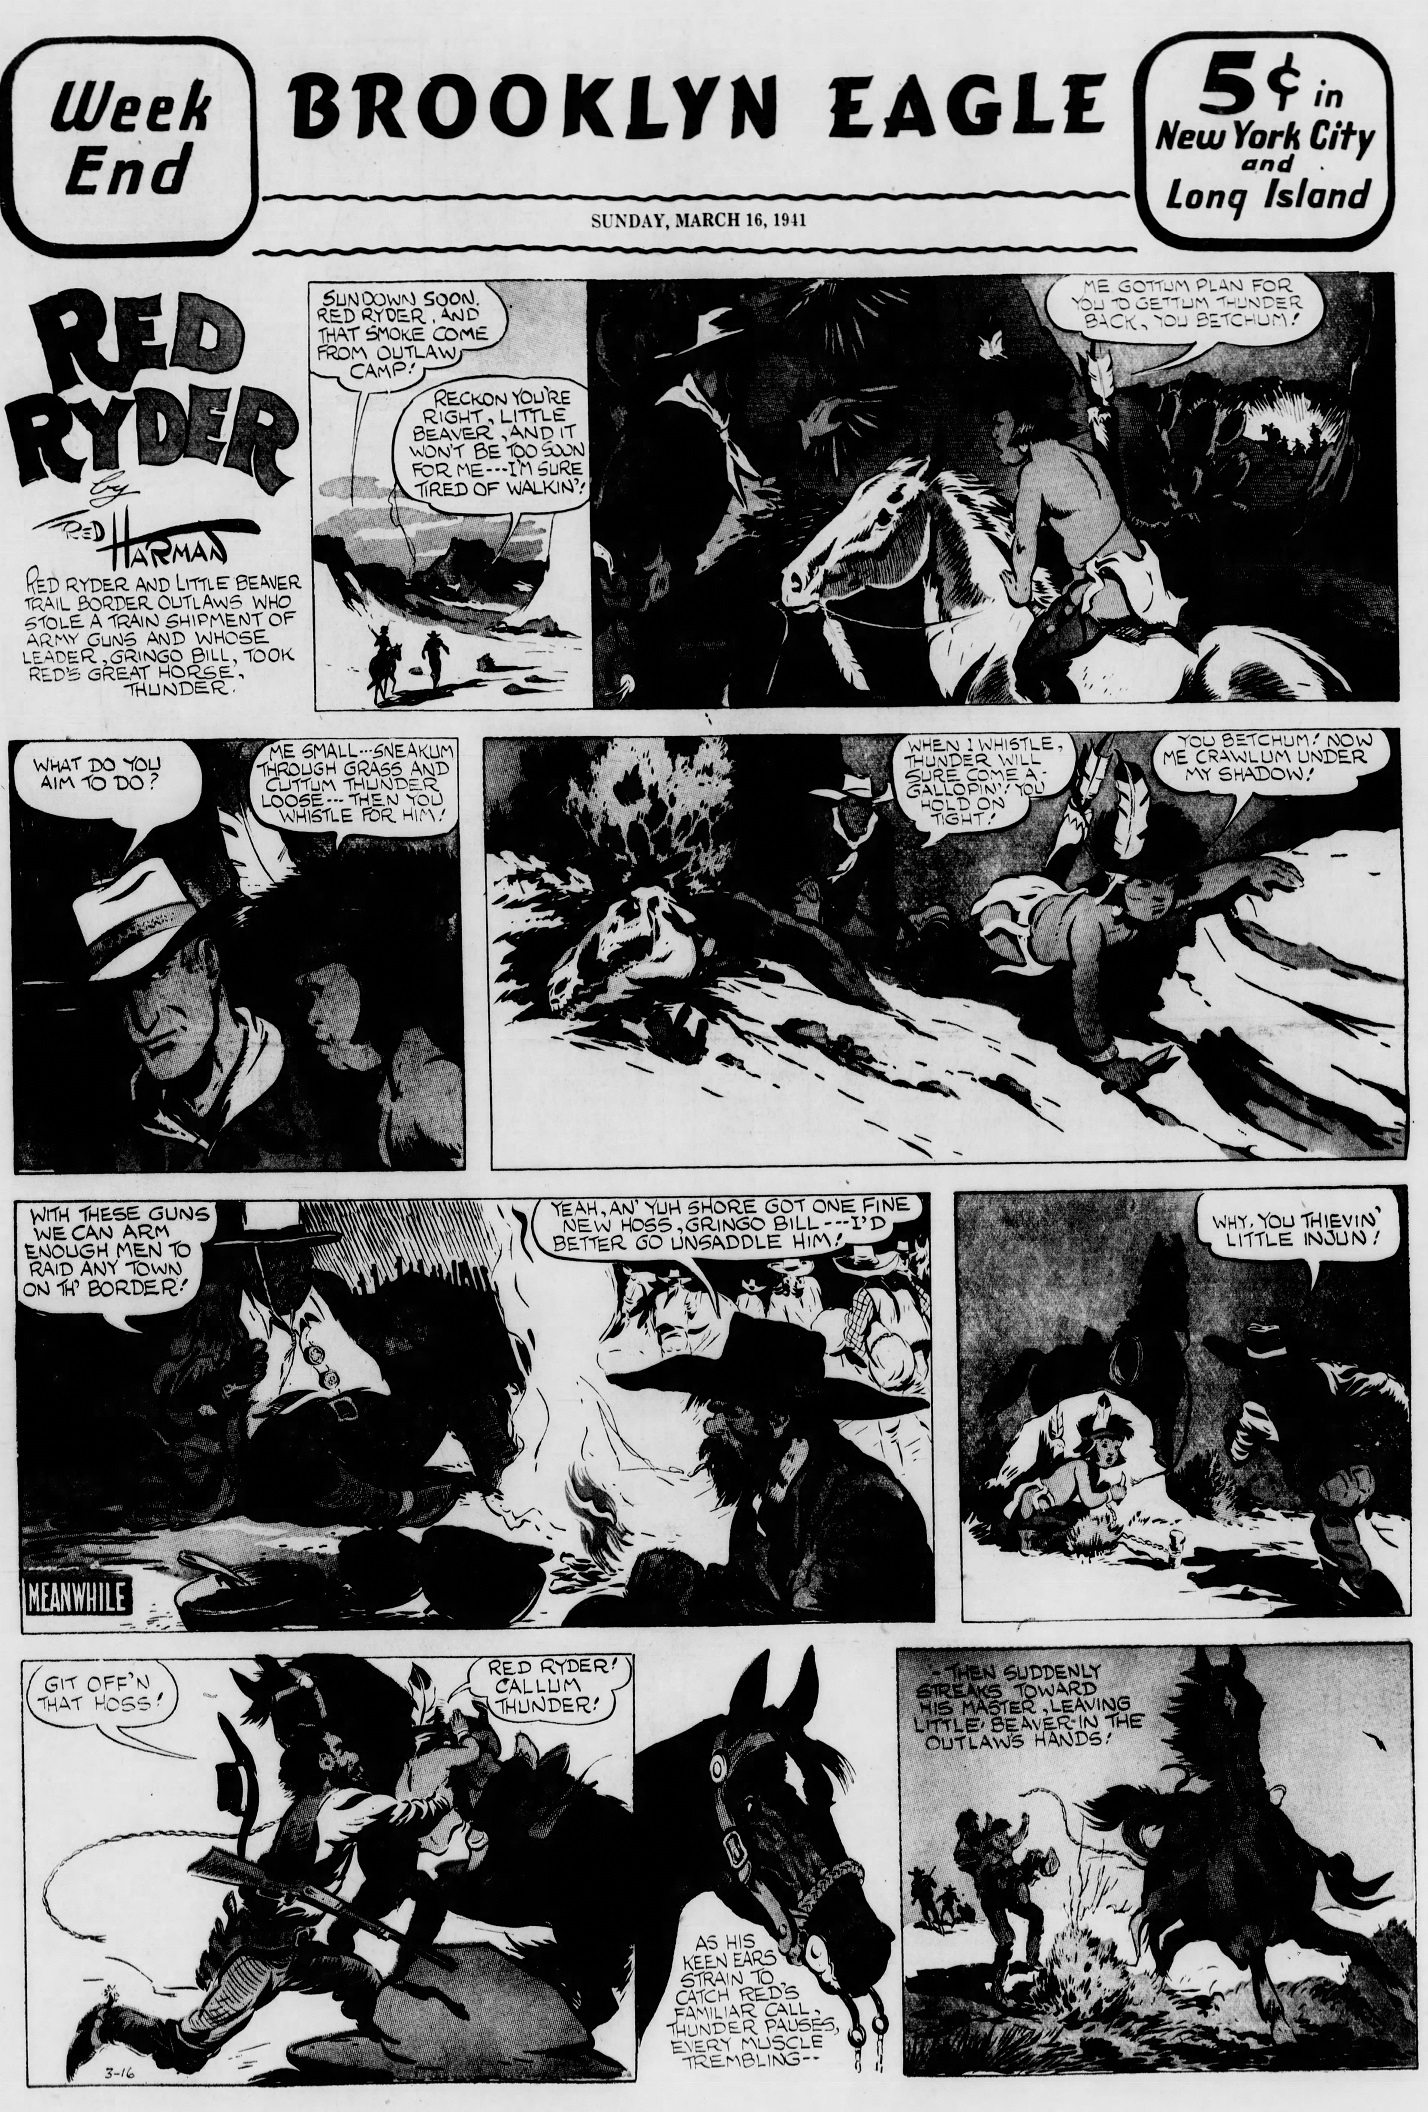 The_Brooklyn_Daily_Eagle_Sun__Mar_16__1941_(6).jpg